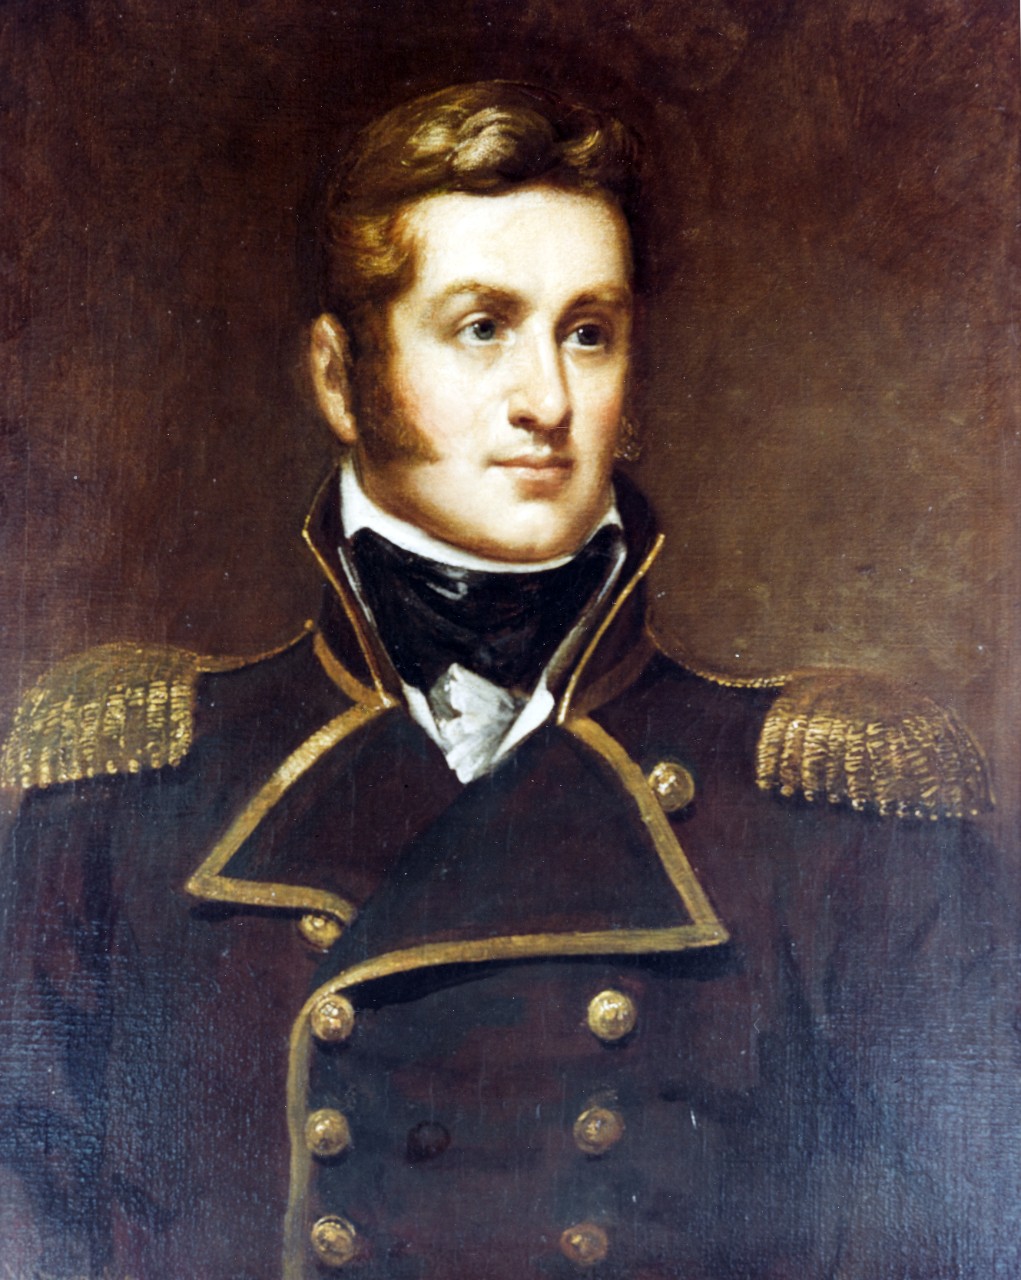 Commodore Thomas Mac Donough, USN (1783-1825)